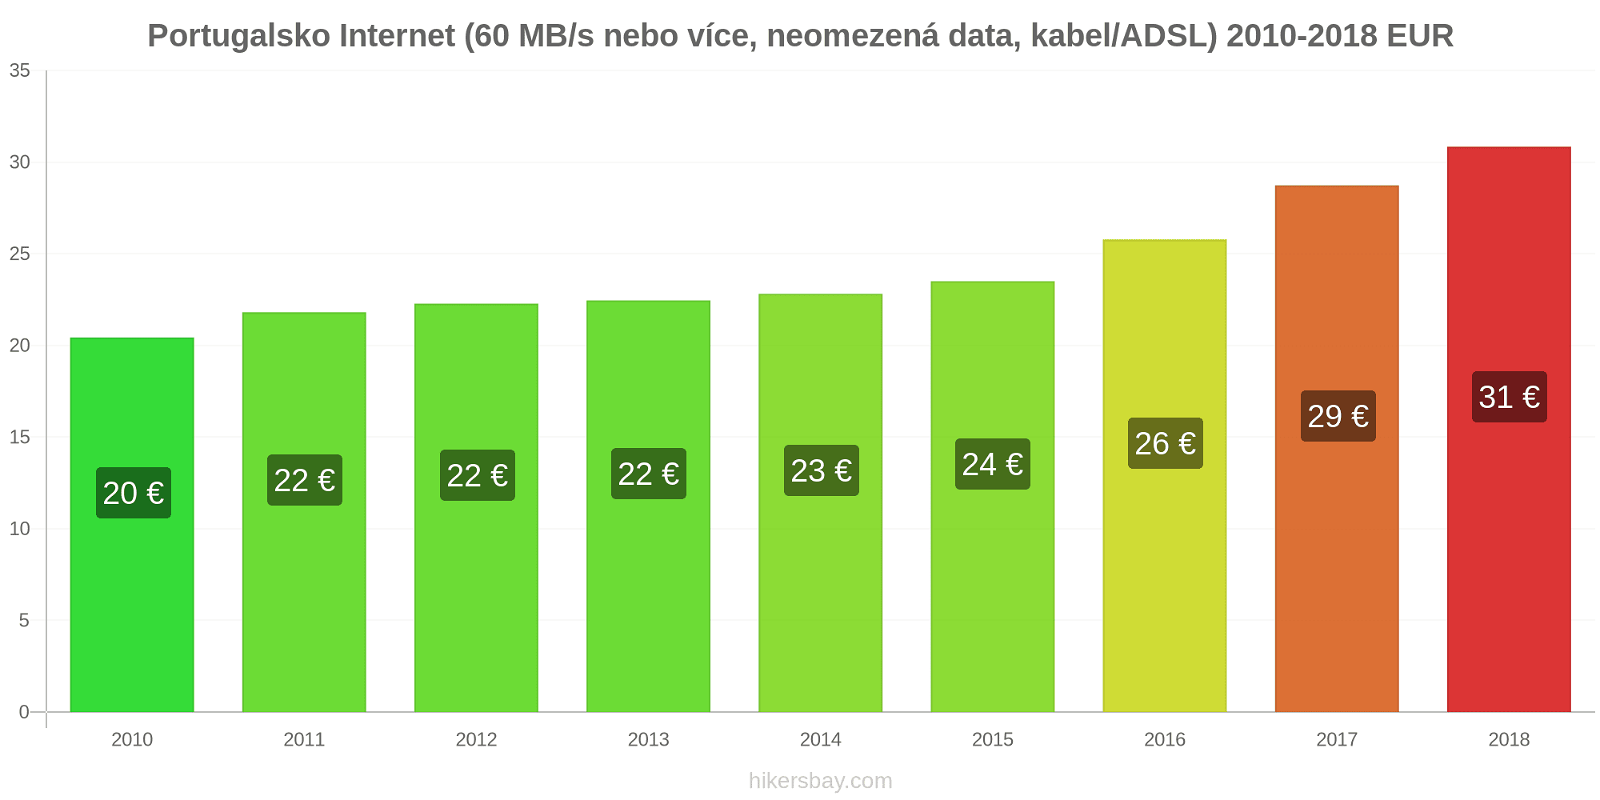 Portugalsko změny cen Internet (60 Mbps nebo více, neomezená data, kabel/ADSL) hikersbay.com